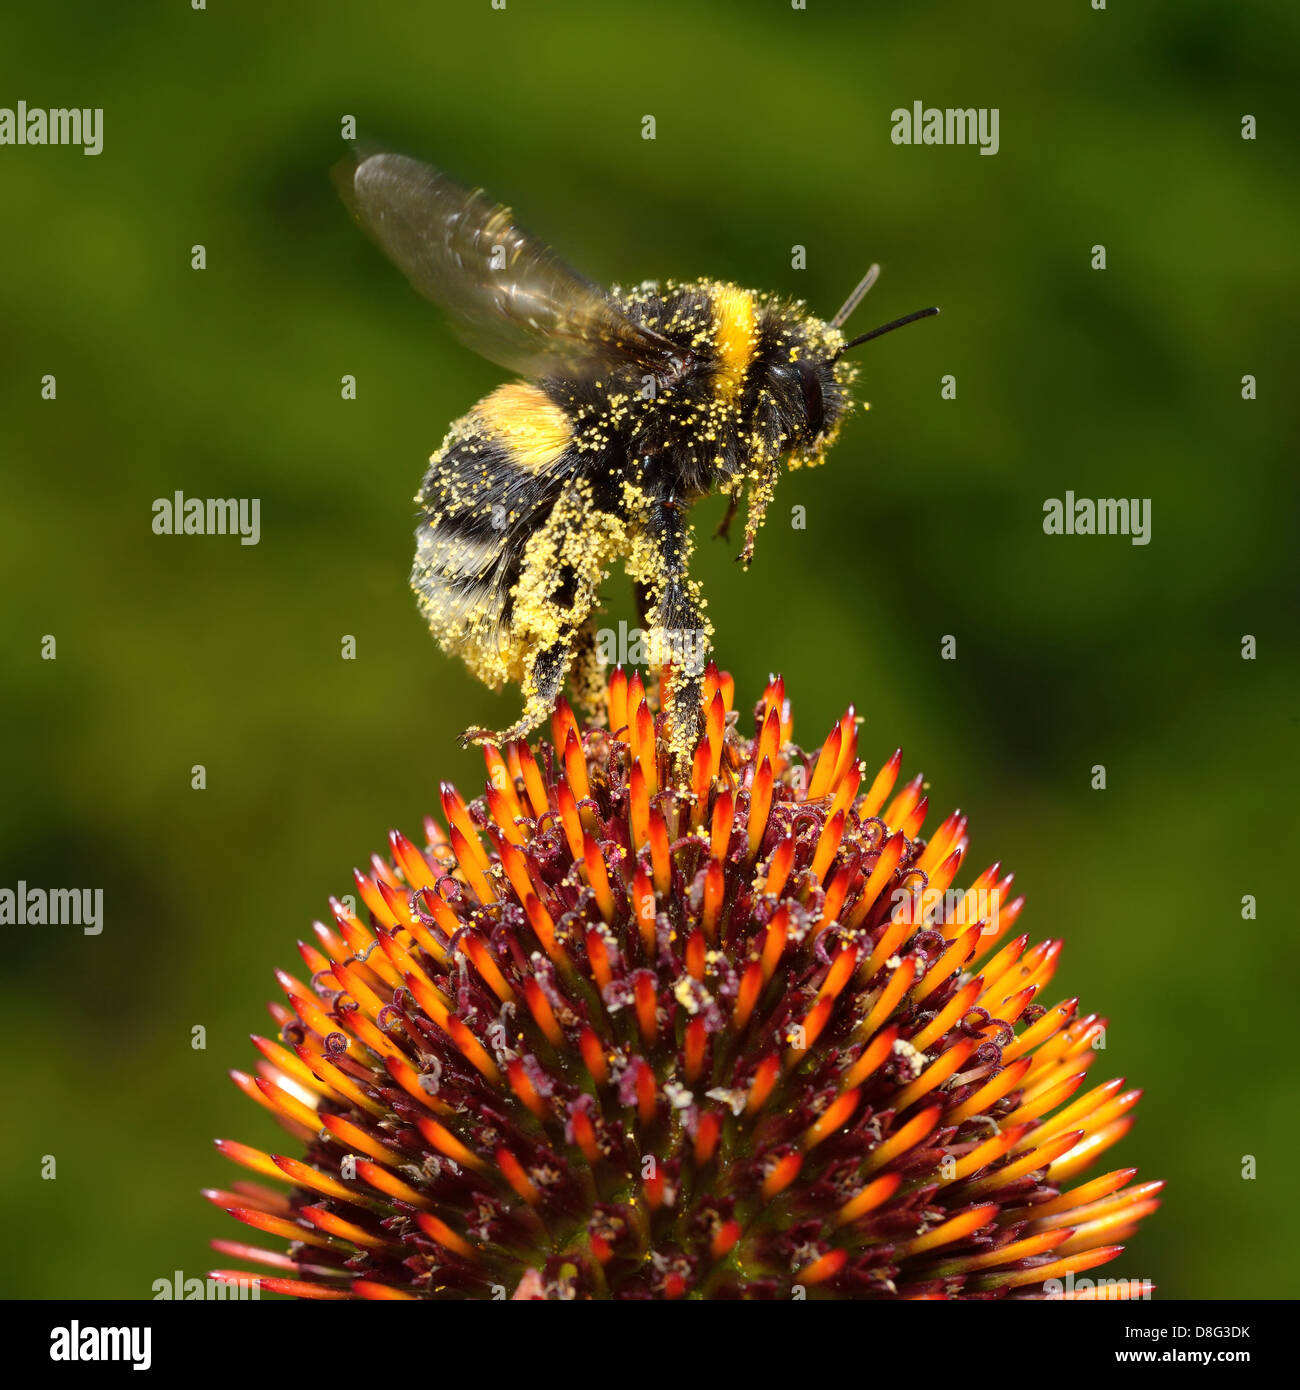 Bumblebee on Echinacea Stock Photo